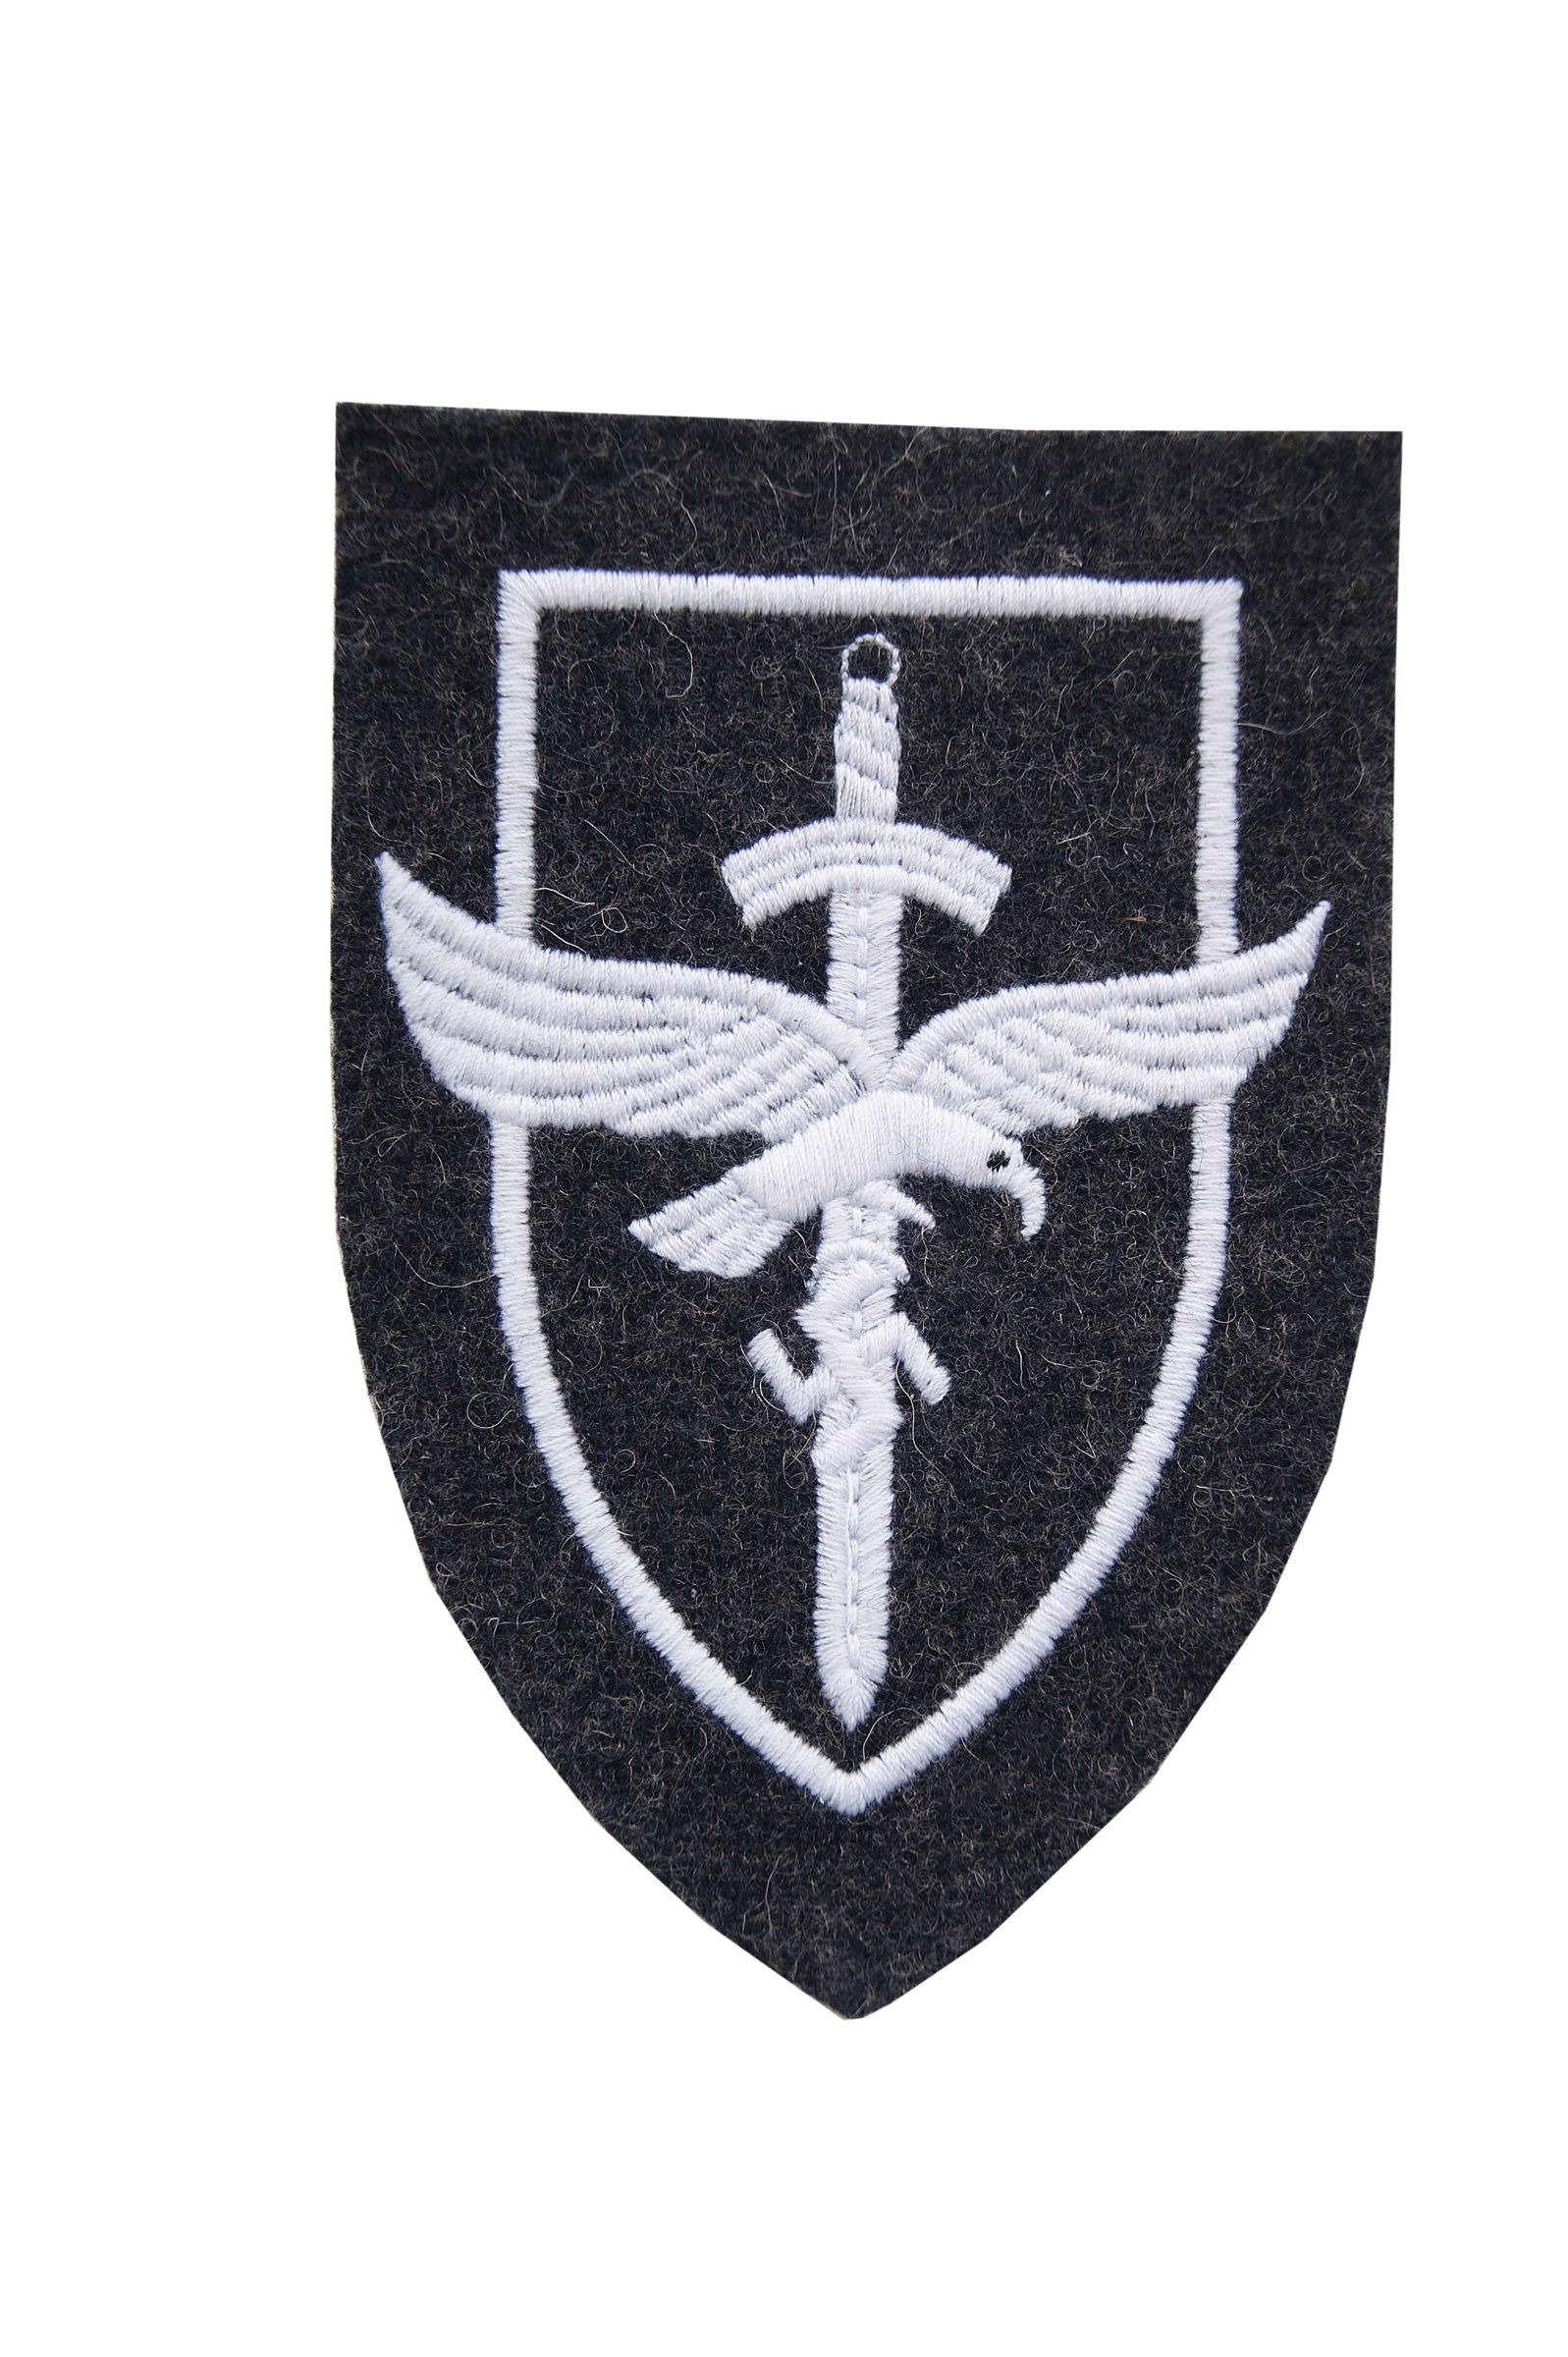 E Armabzeichen Tätigkeitsabzeichen für LW Luftwaffe Flakartillerie Repro 